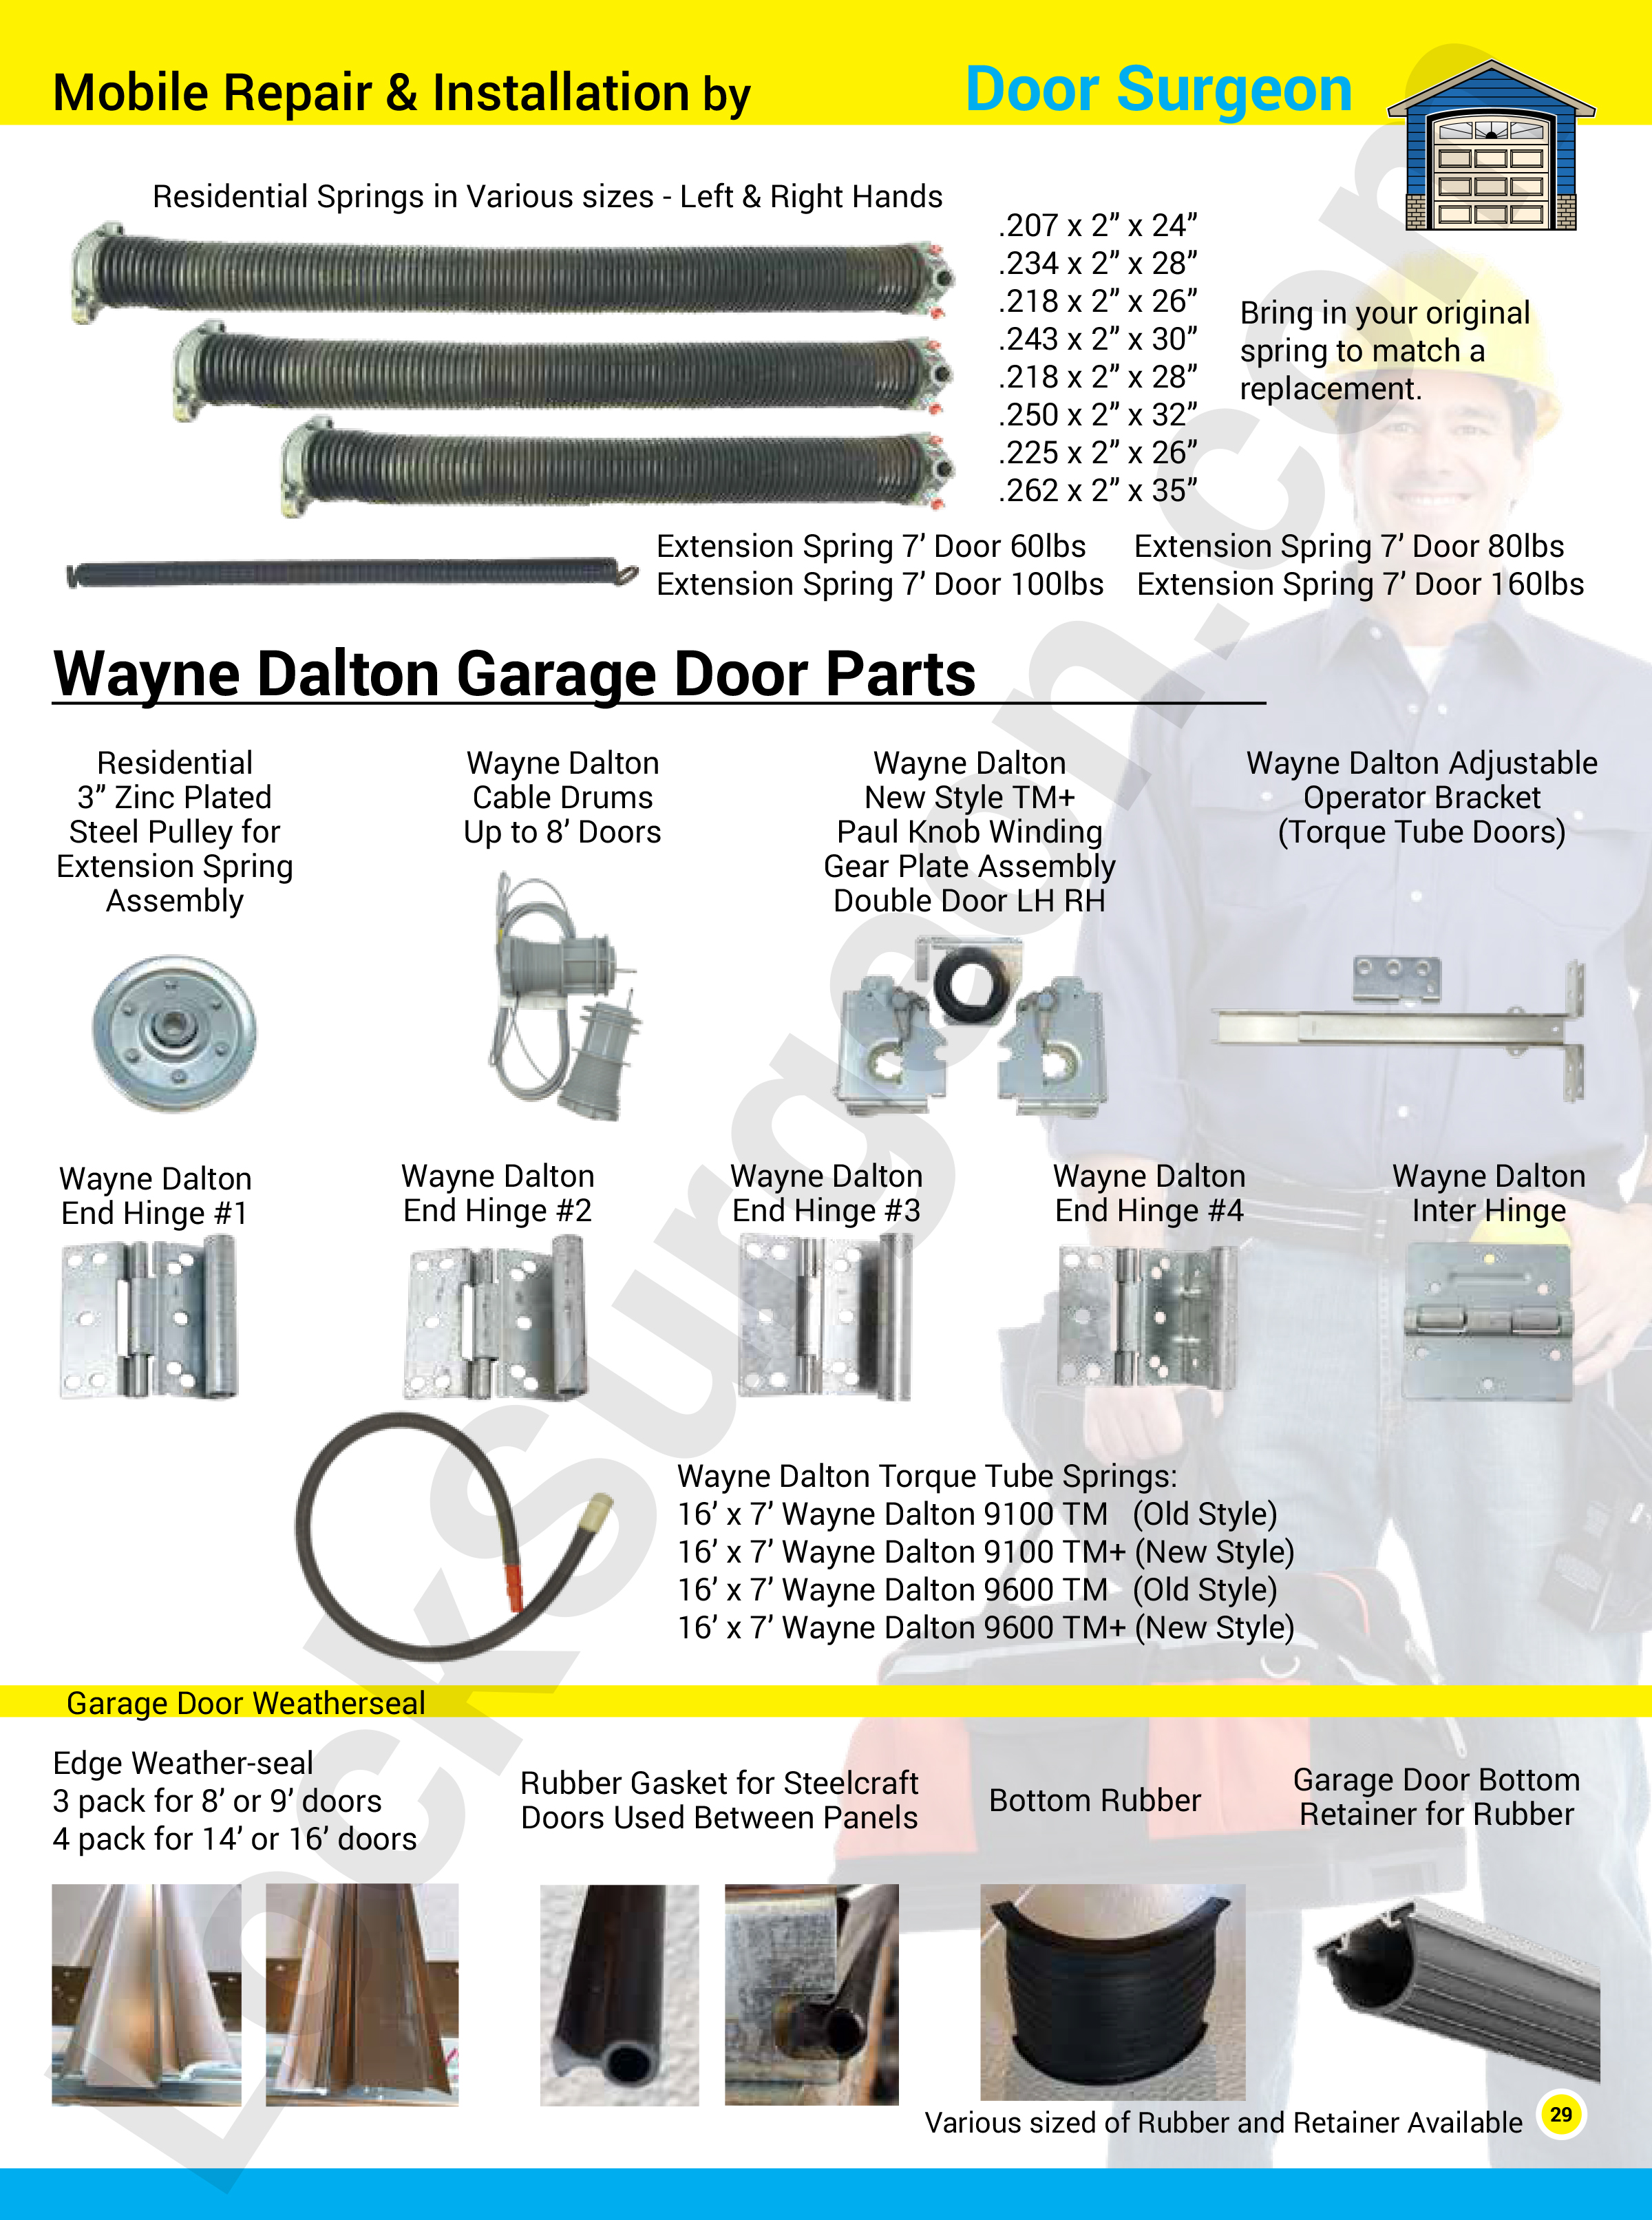 Garage door part solutions for home, commercial, and trucks. Garage door repairs, replacement parts.